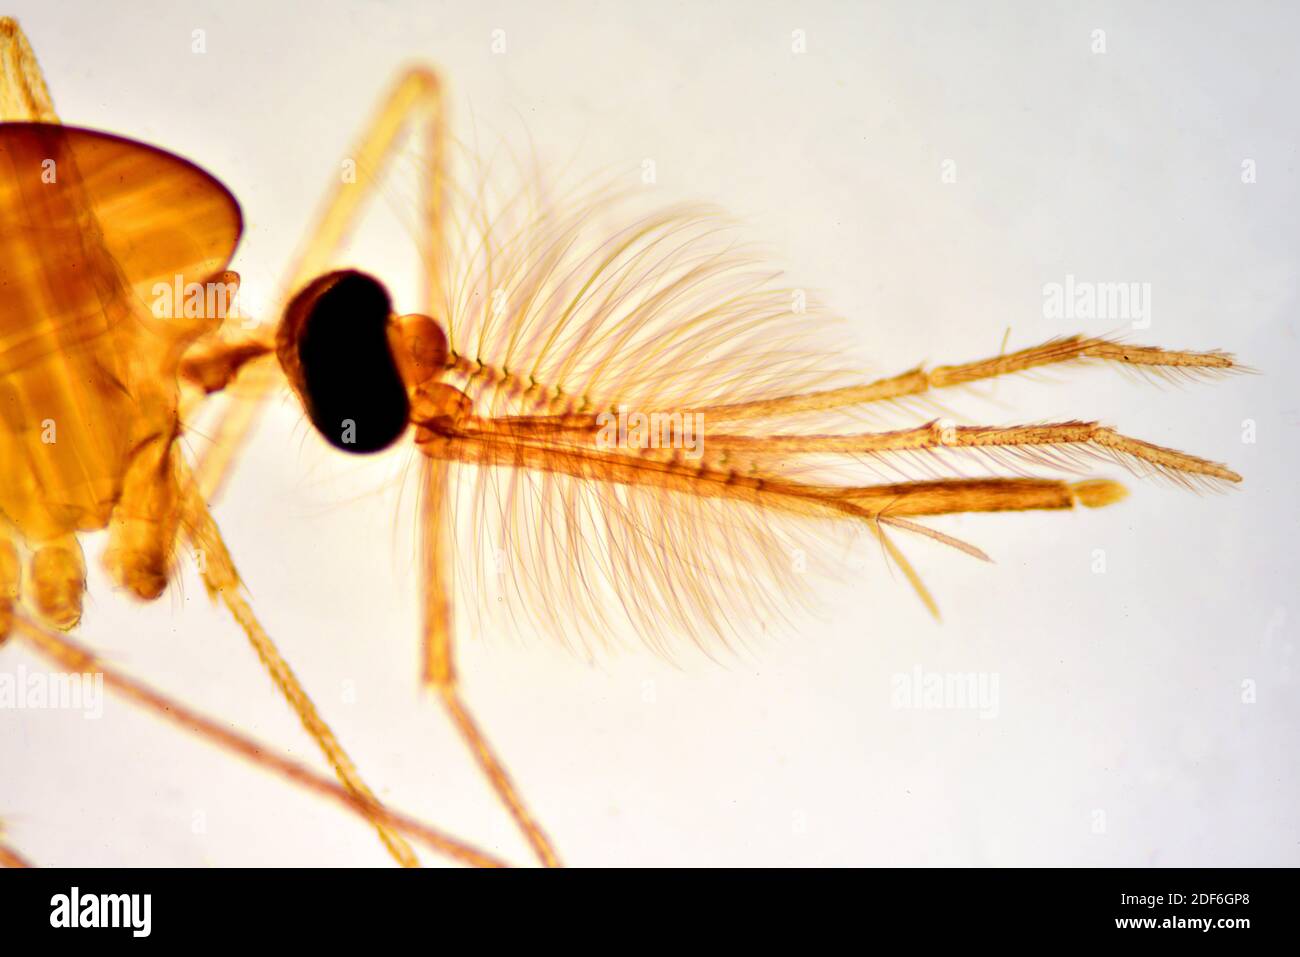 Casa comune zanzara maschio (Culex pipipiens), testa con antenne, proboscide, palpe, occhi composti e gambe. Microscopio ottico X40. Foto Stock